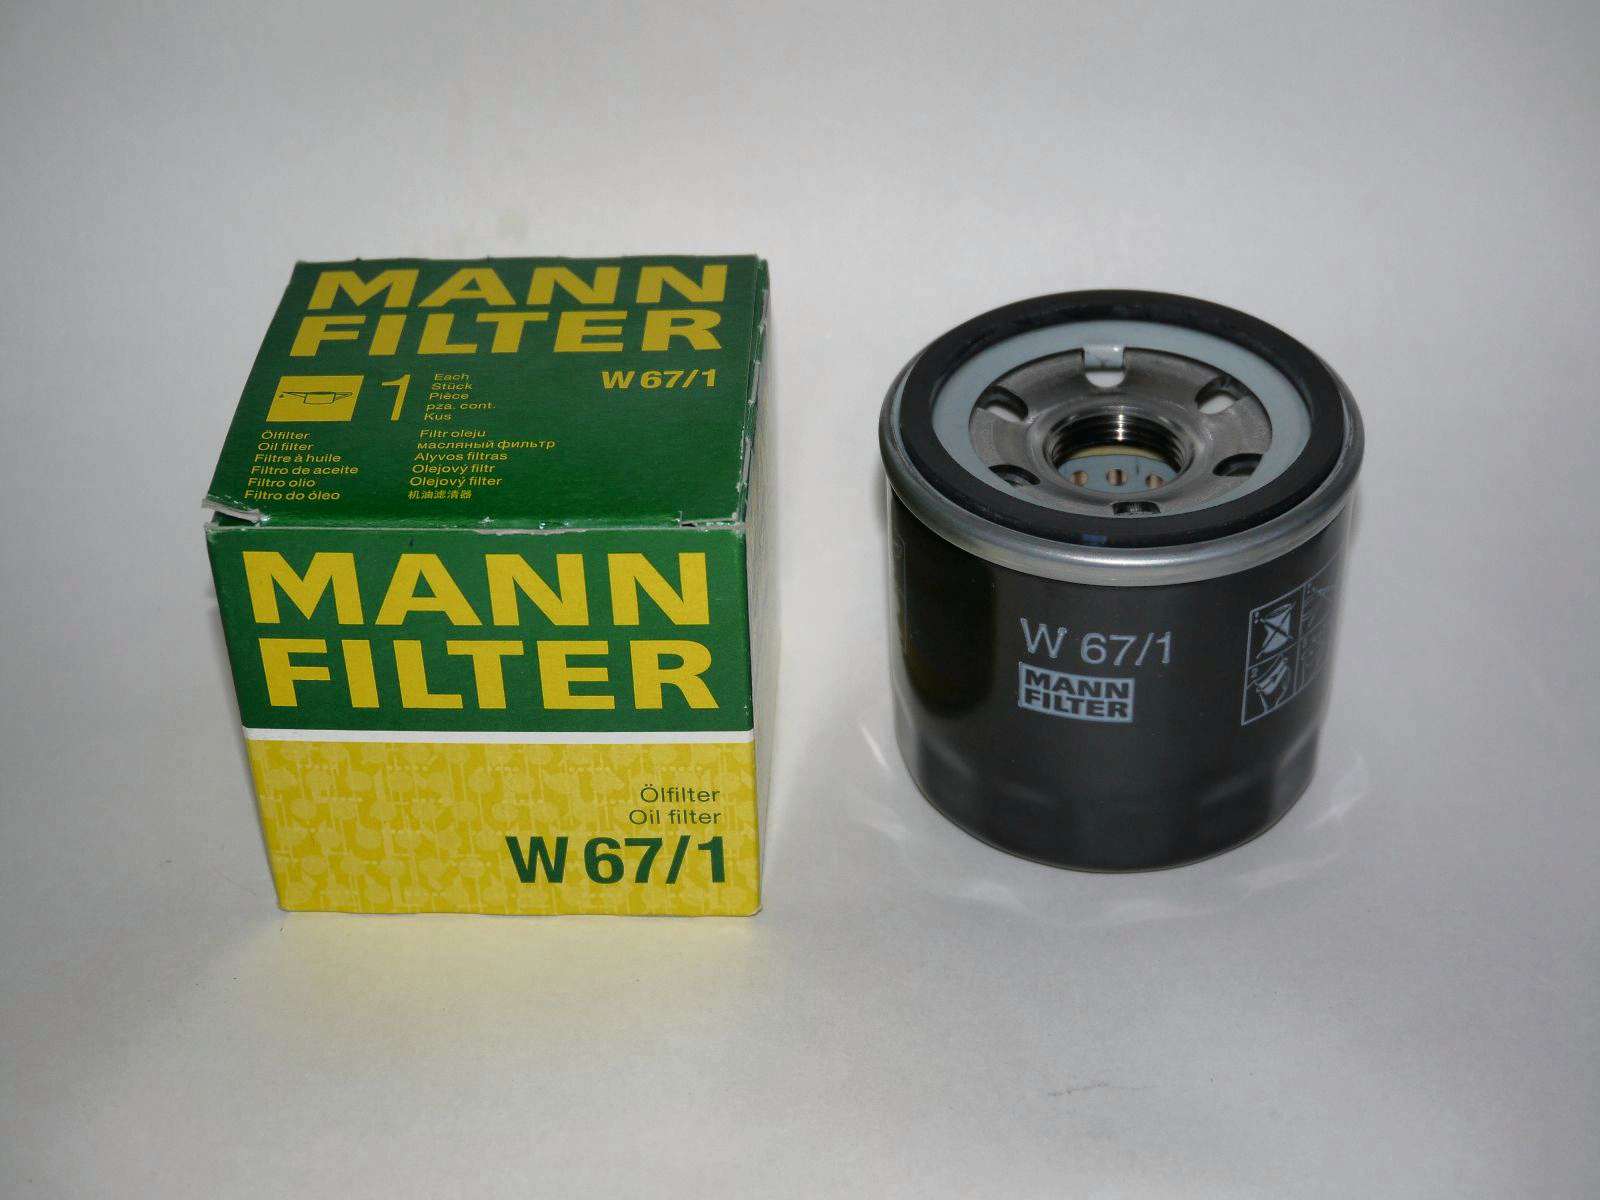 W67 1 фильтр масляный. Масляный фильтр Mann-Filter w 67/1. Lancer 10 масляный фильтр Mann. Mitsubishi Lancer 10 фильтр масляный Mann. Масляный фильтр Манн 67/1.